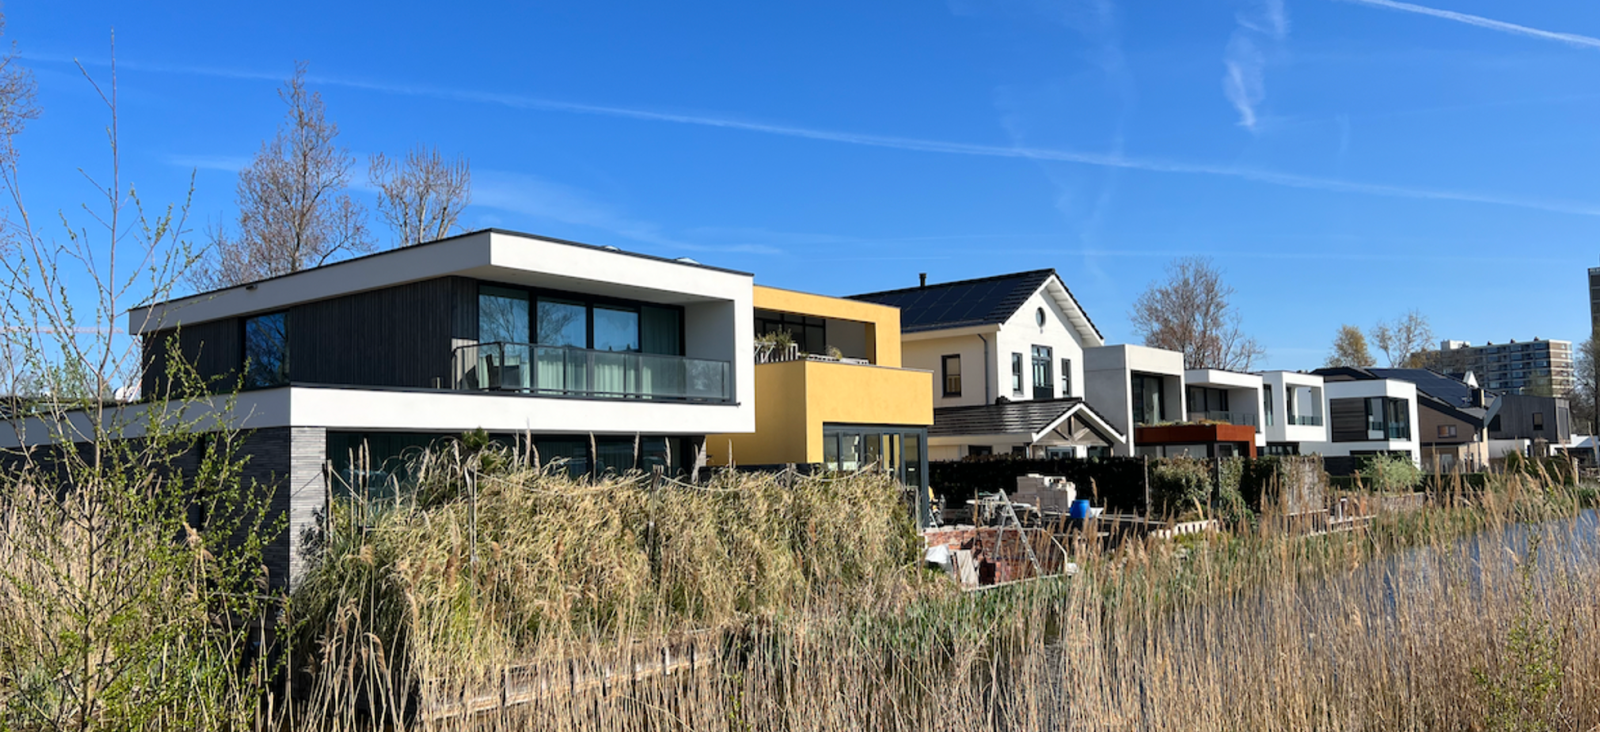 Netherlands self build homes